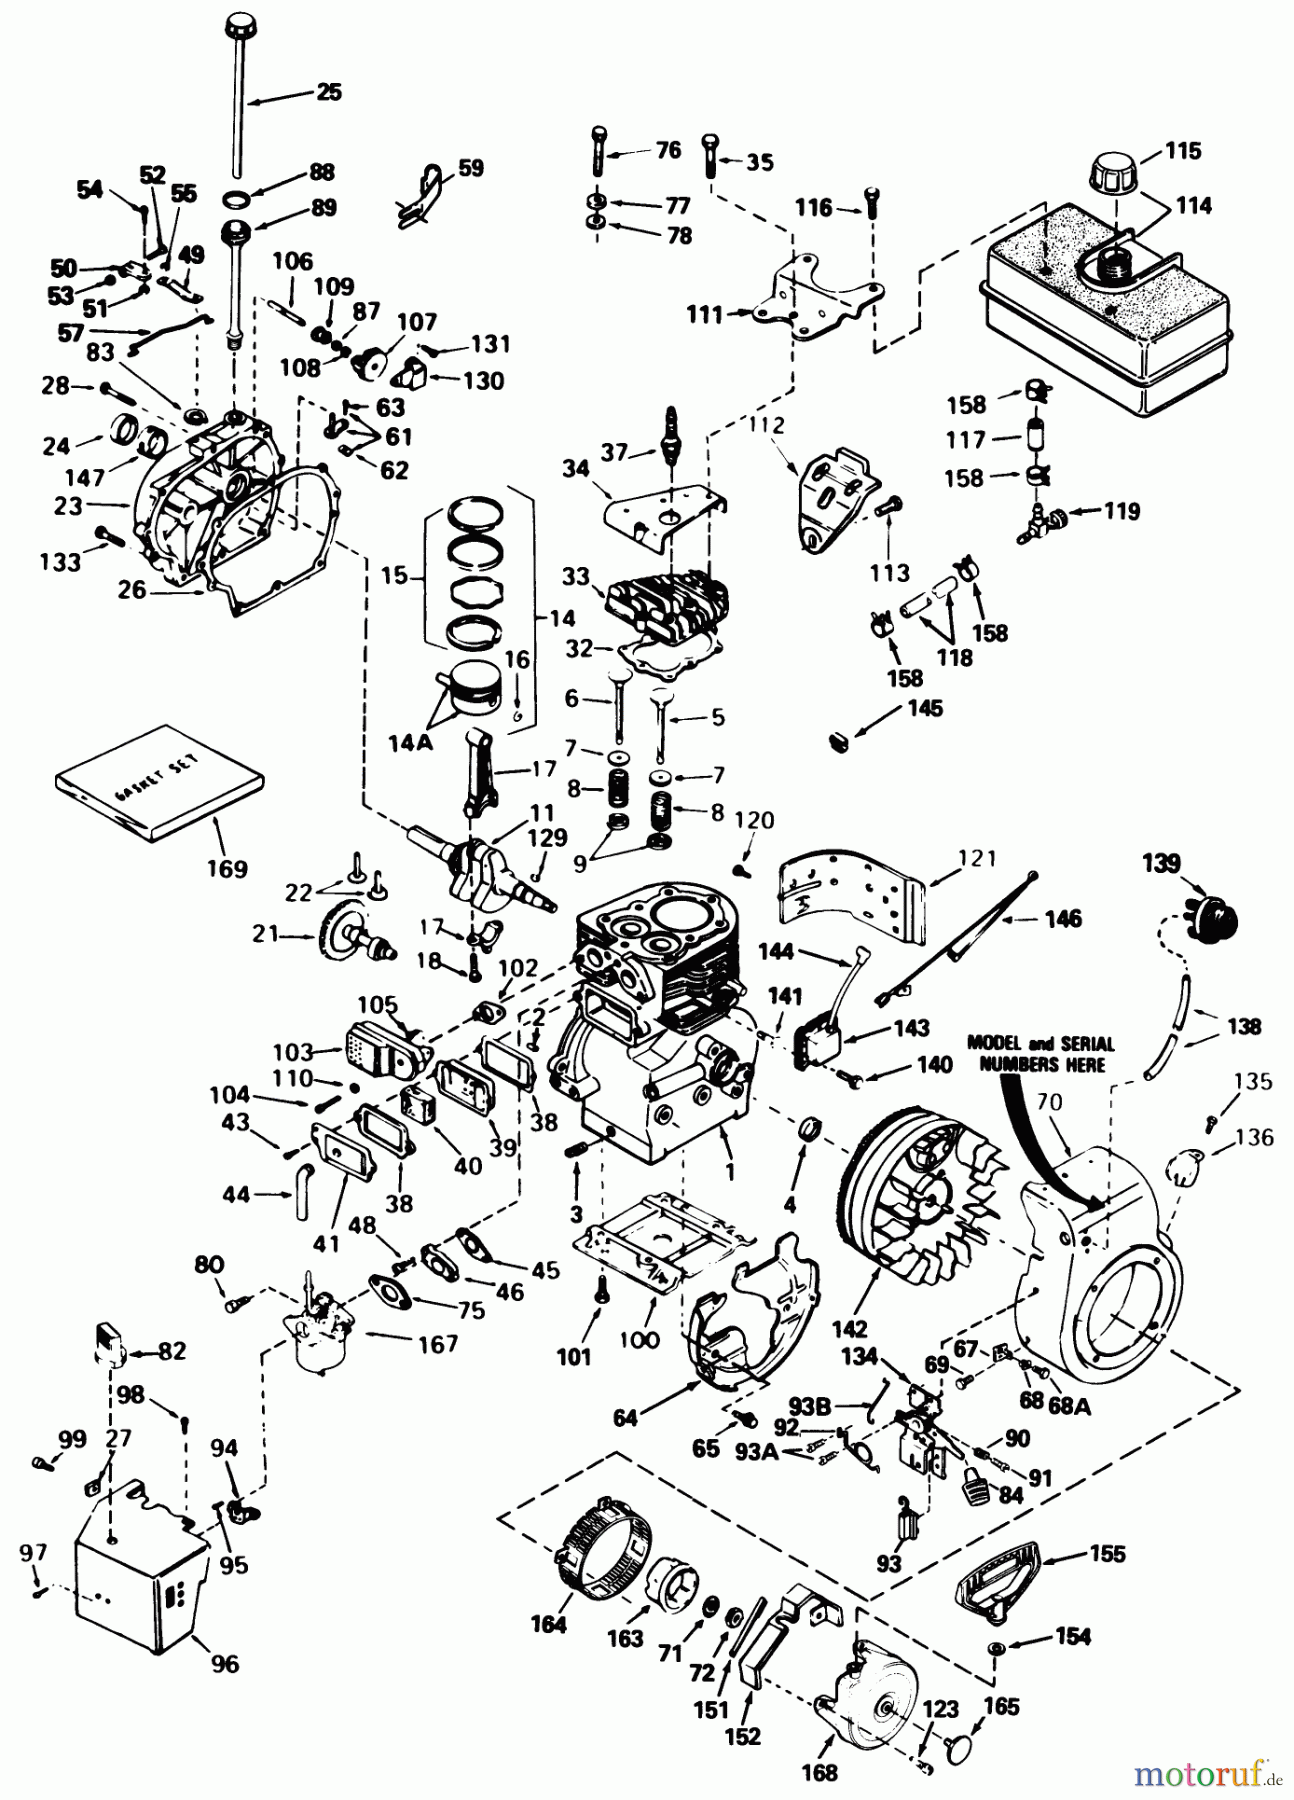  Toro Neu Snow Blowers/Snow Throwers Seite 1 38513 (624) - Toro 624 Power Shift Snowthrower, 1991 (SN 1000001-9999999) ENGINE TECUMSEH MODEL NO. H60-75504W